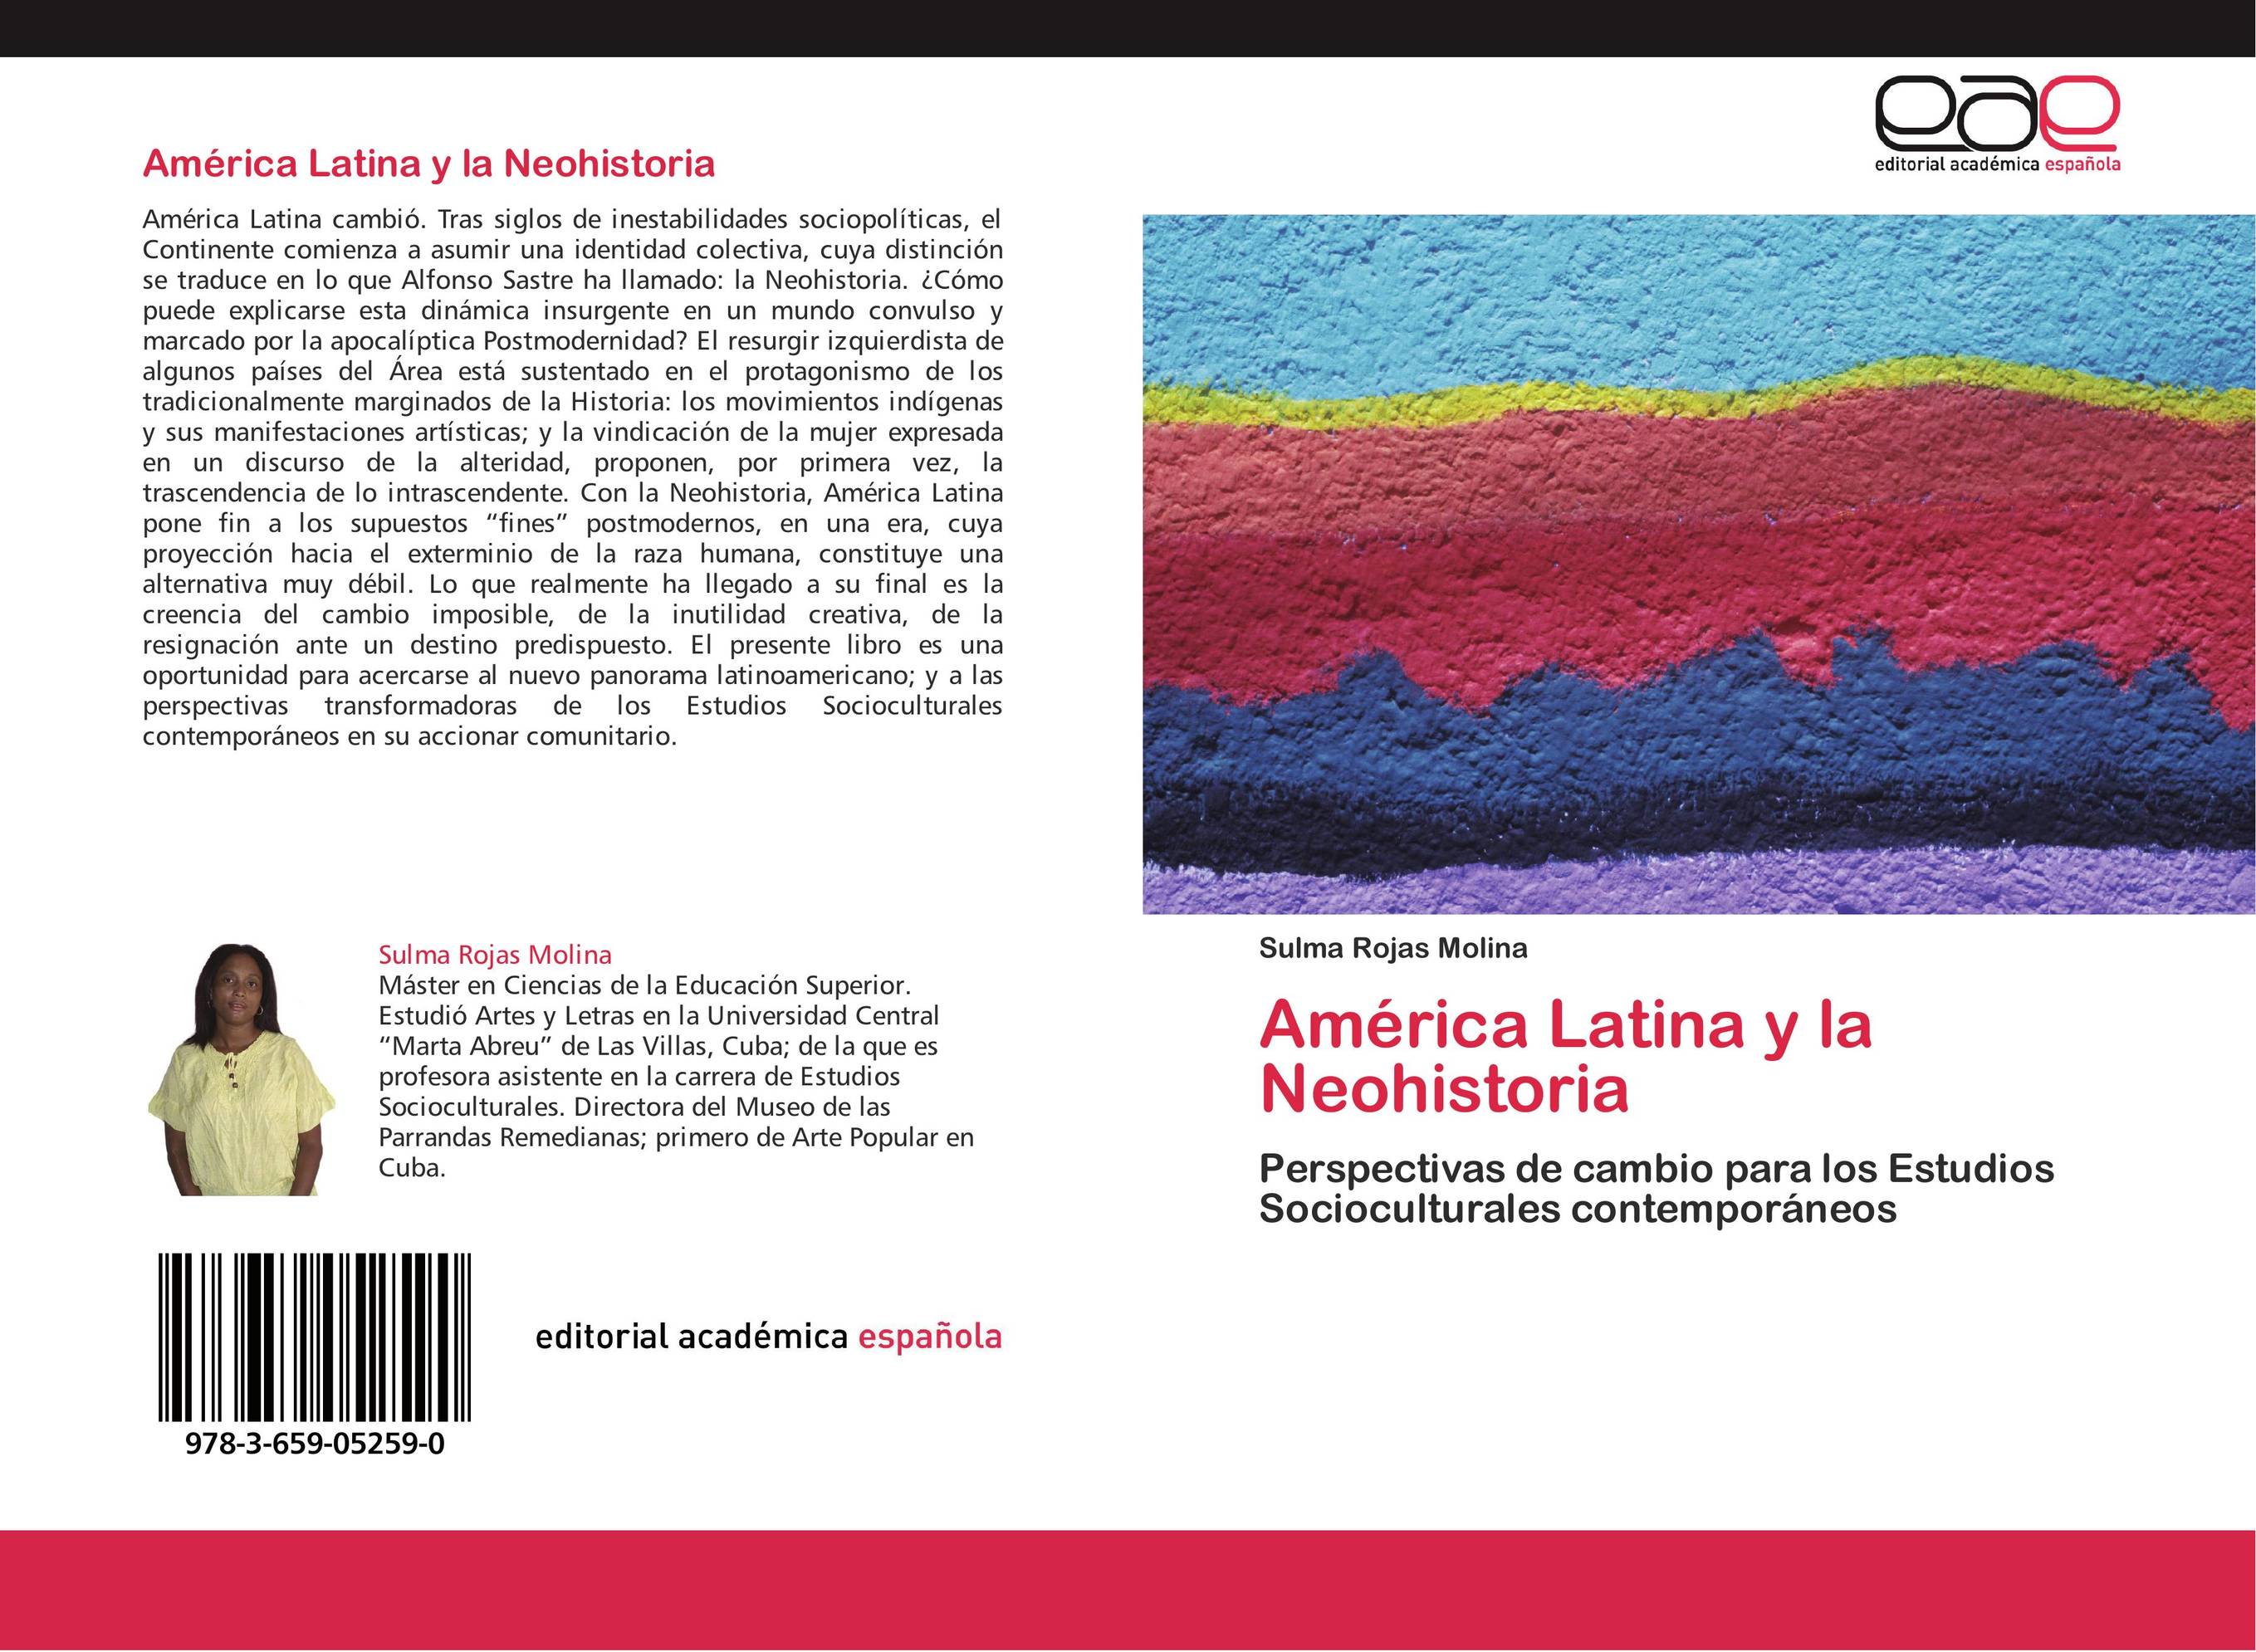 América Latina y la Neohistoria